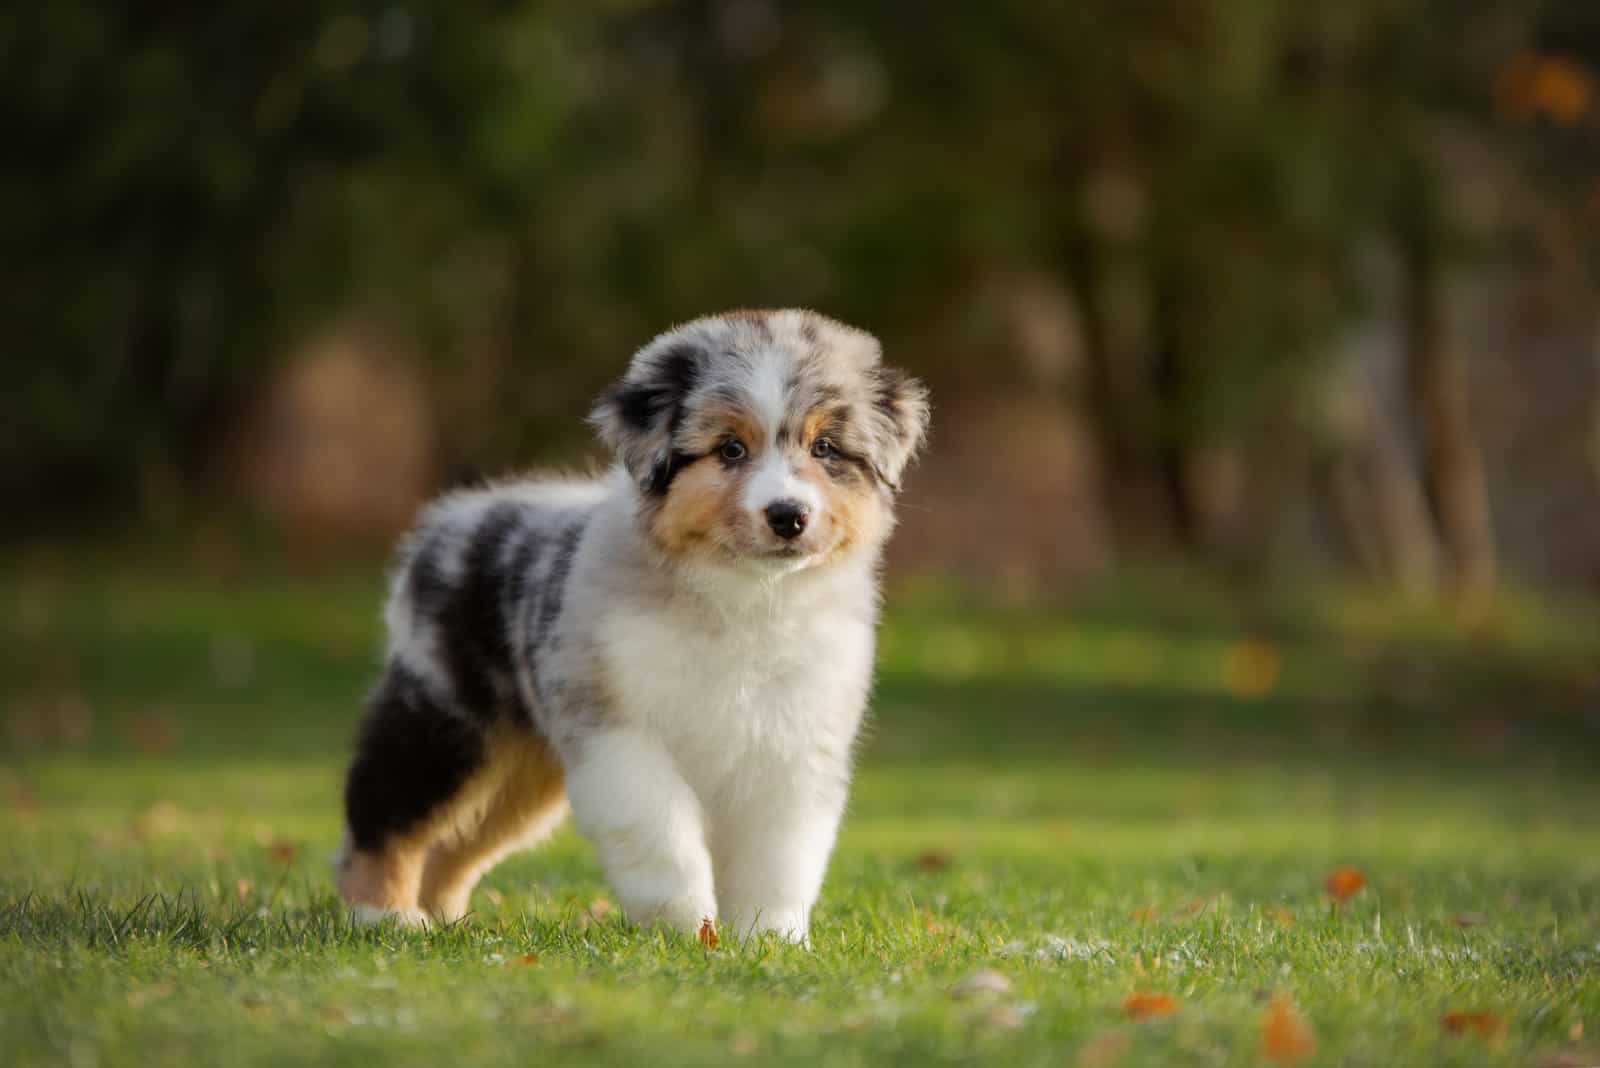 cute Australian Shepherd puppy standing on grass